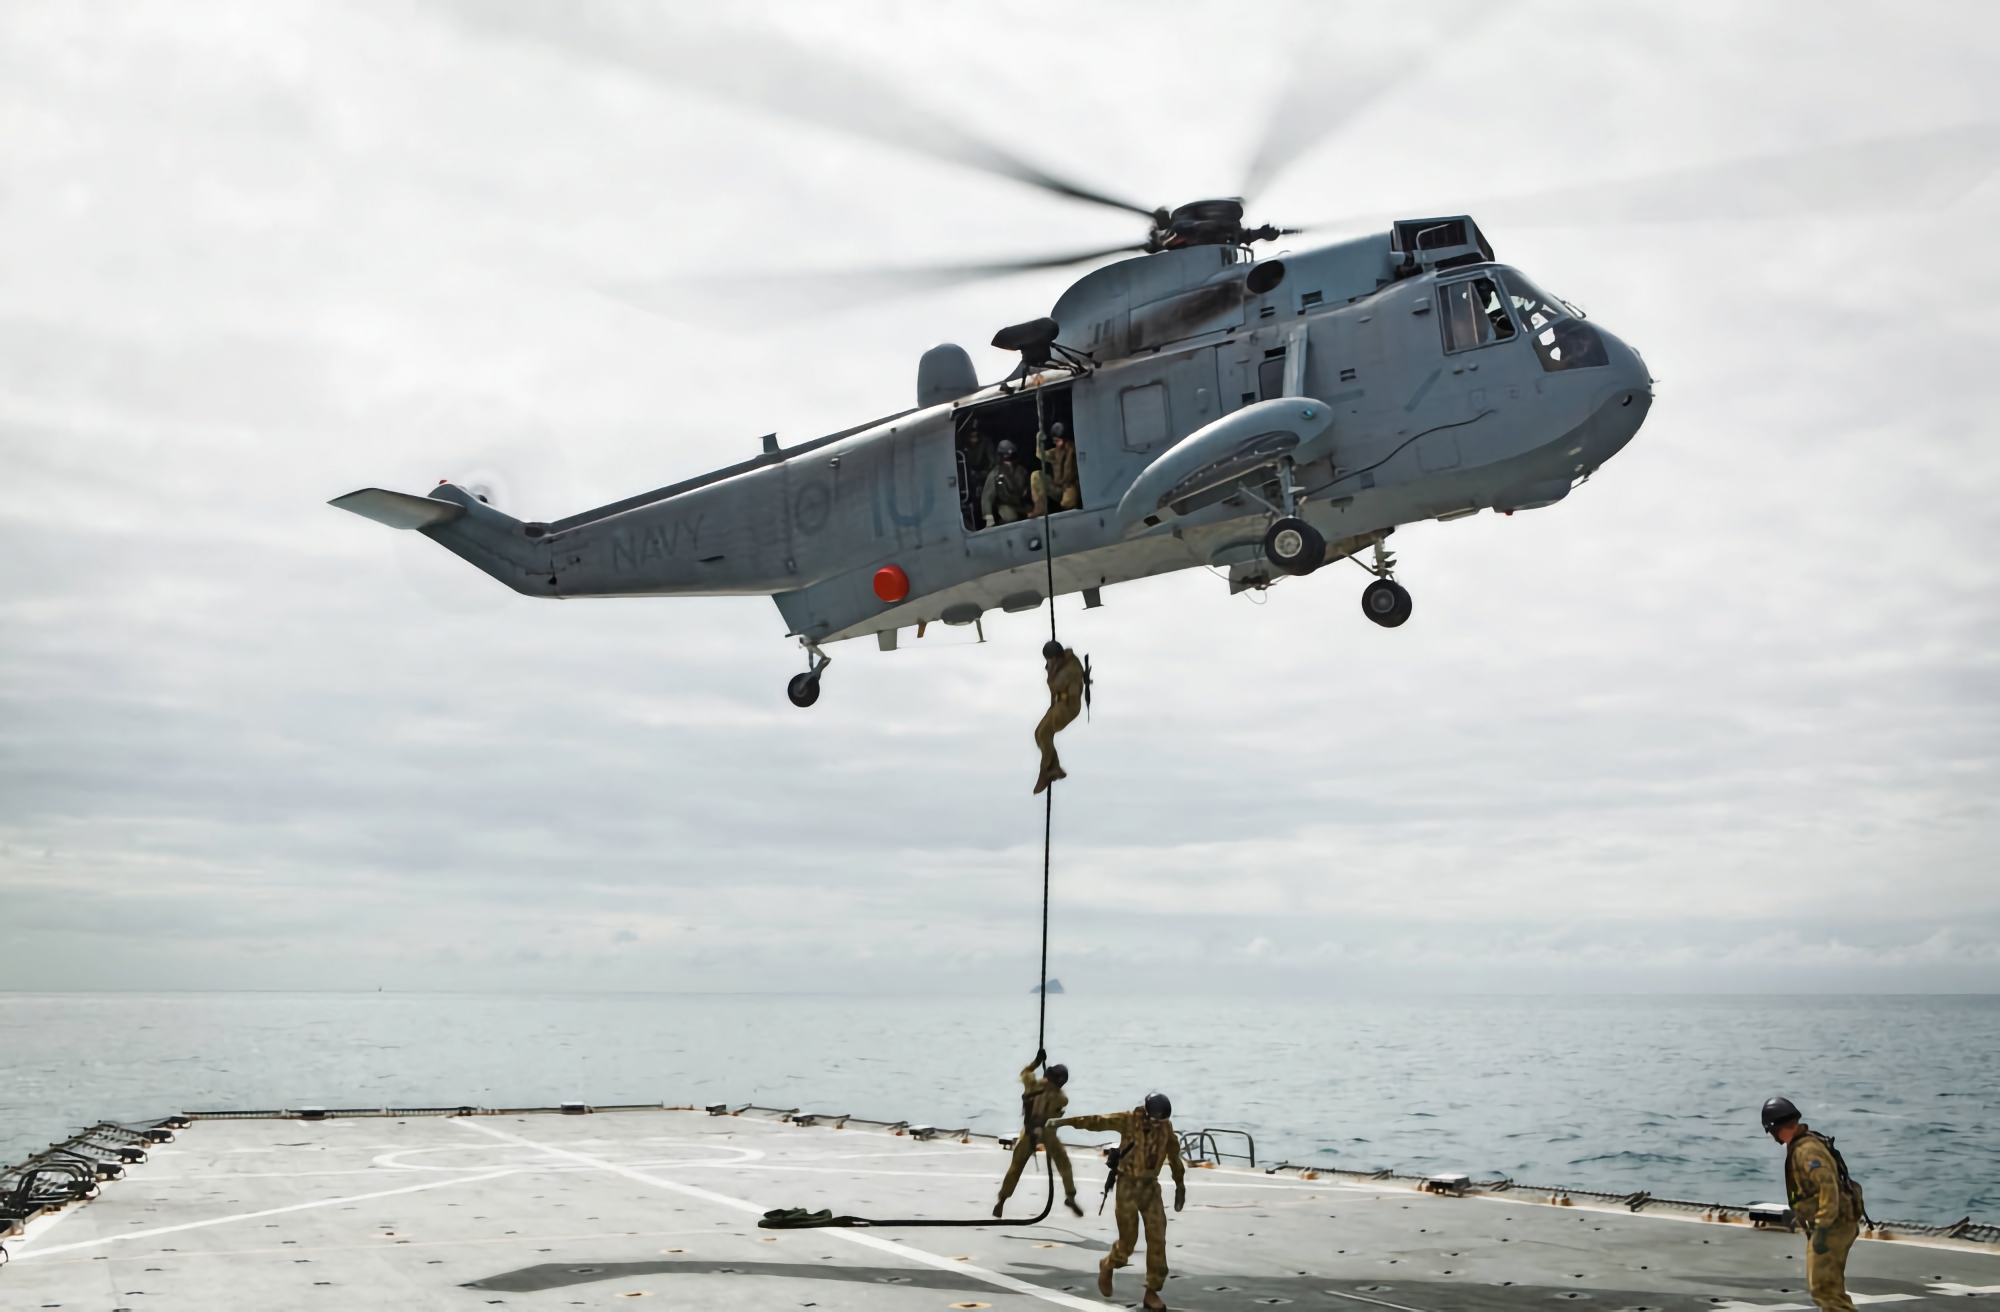 La Gran Bretagna regala all'Ucraina tre elicotteri Sikorsky S-61 Sea King da utilizzare per le missioni di ricerca e soccorso